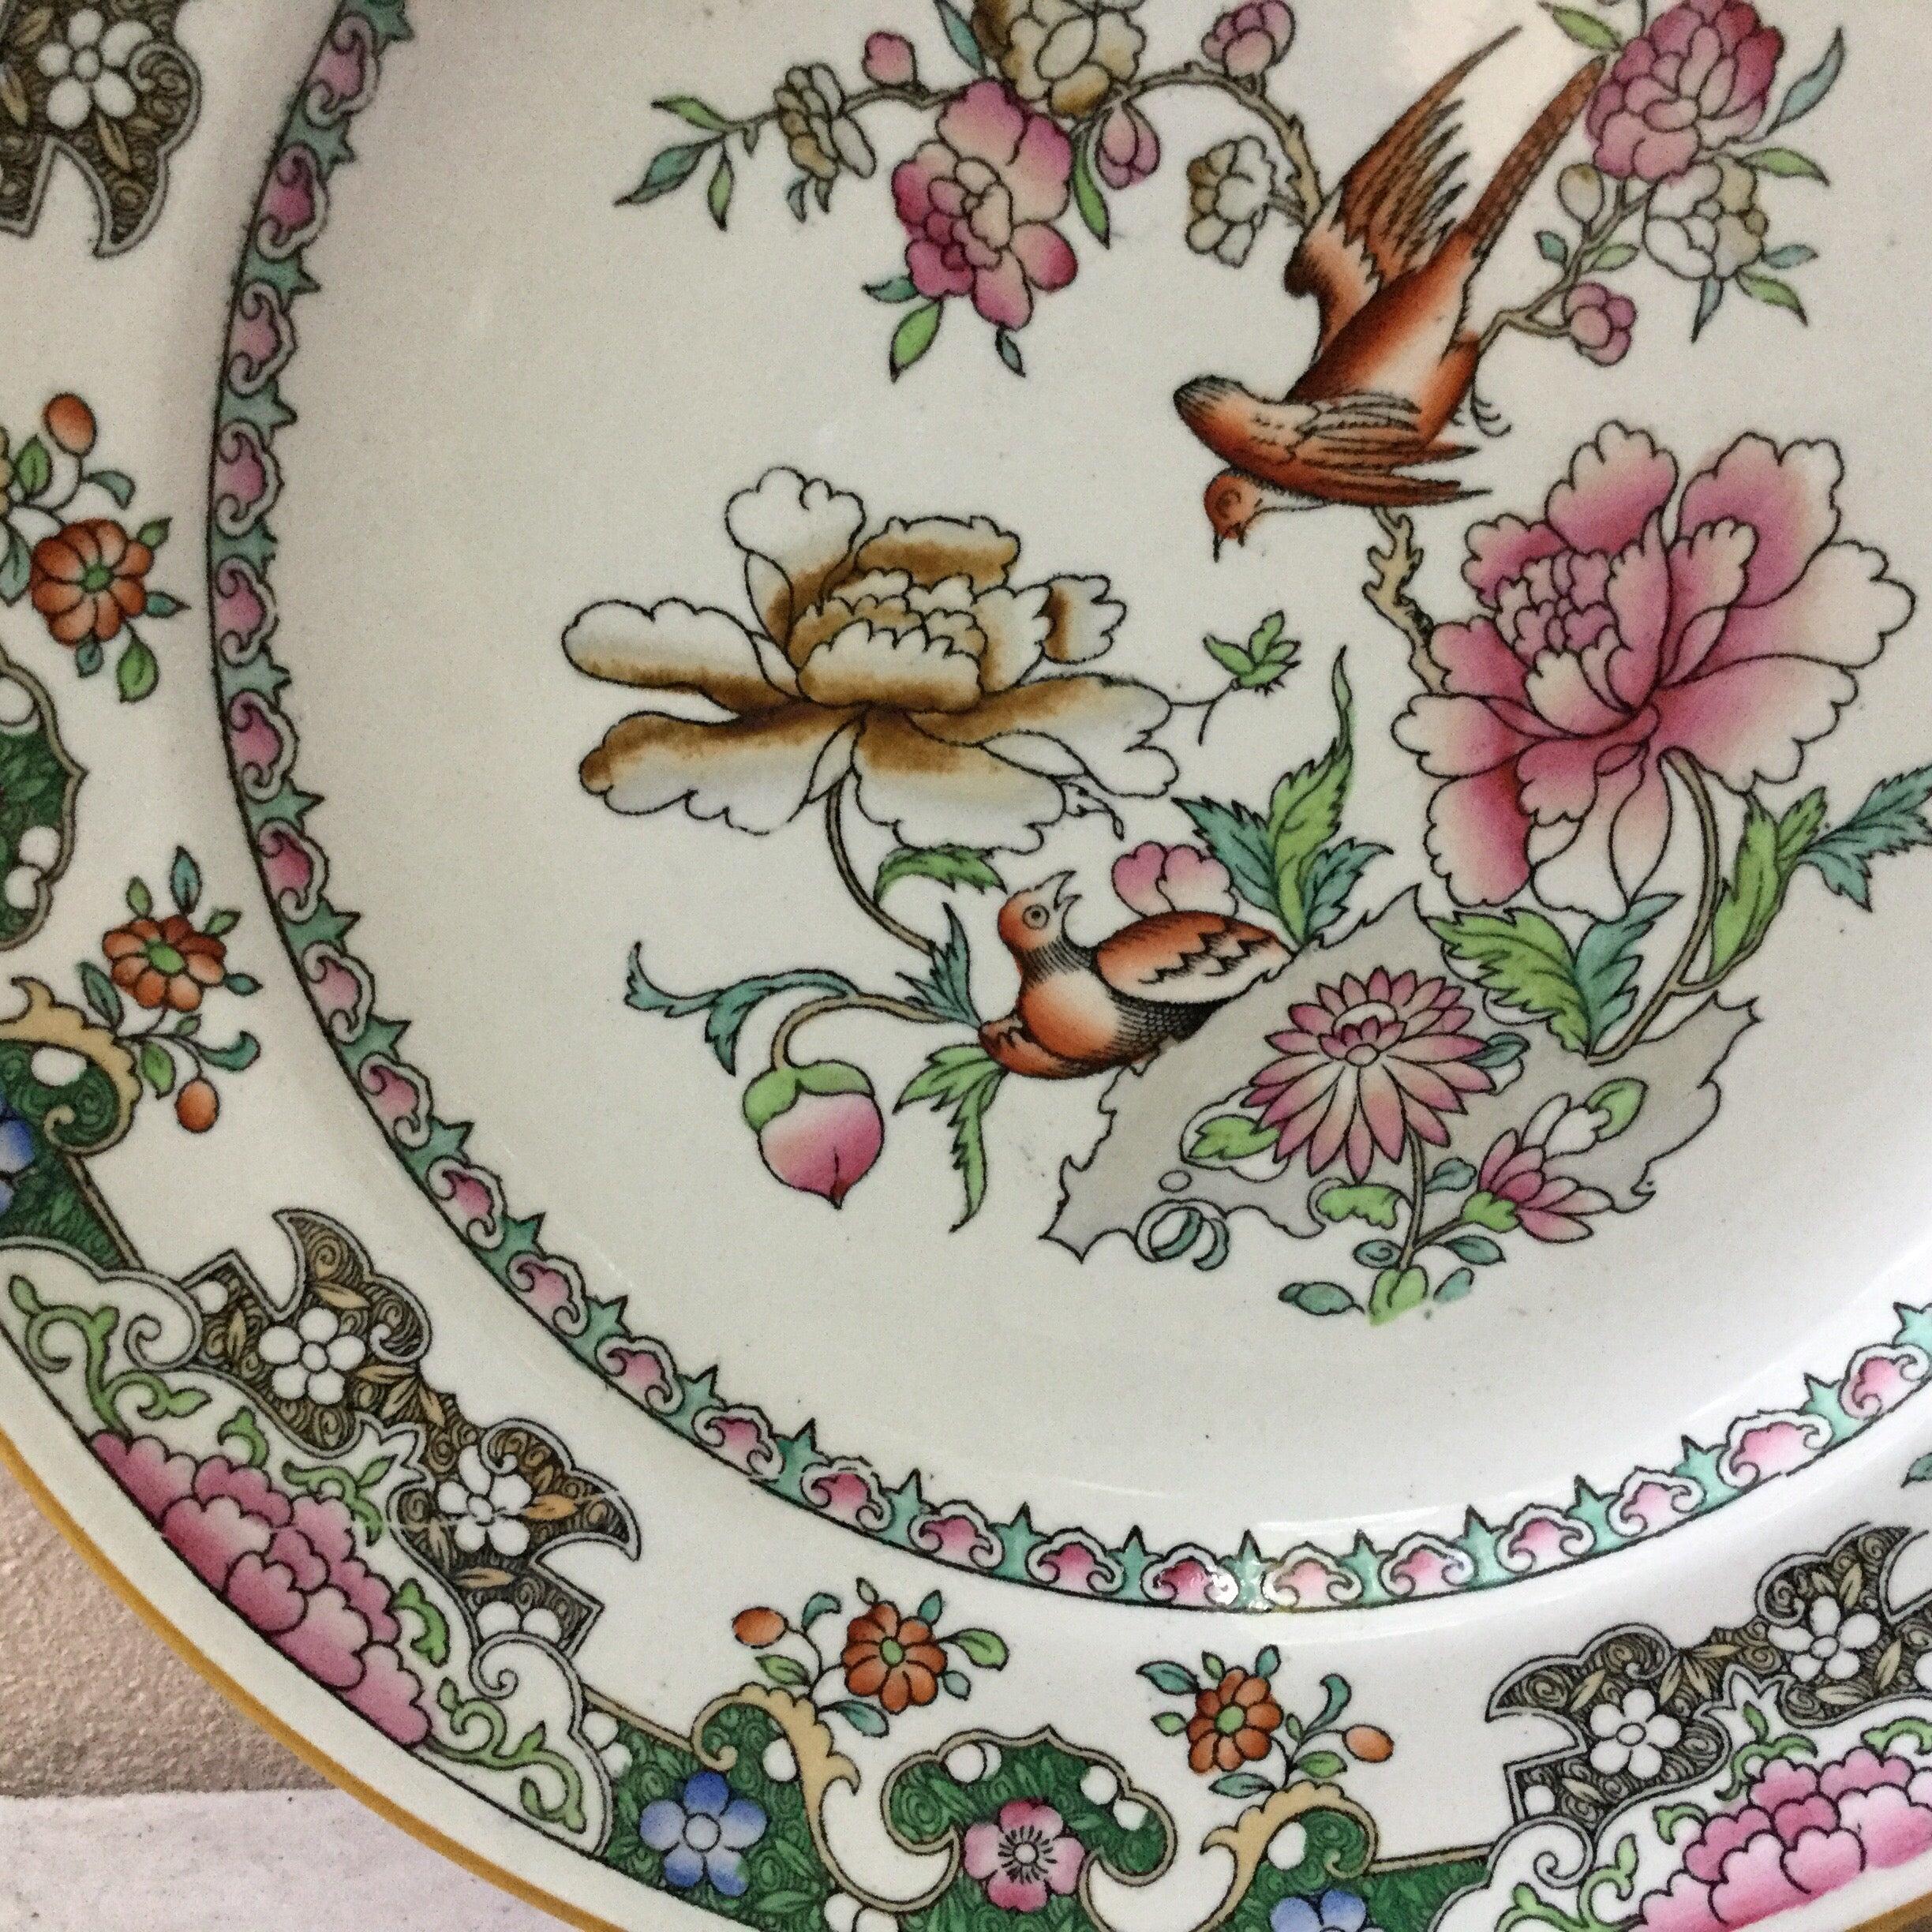 assiette à fleurs et oiseaux du 19ème siècle signée Minton. 
Inspiration chinoise.